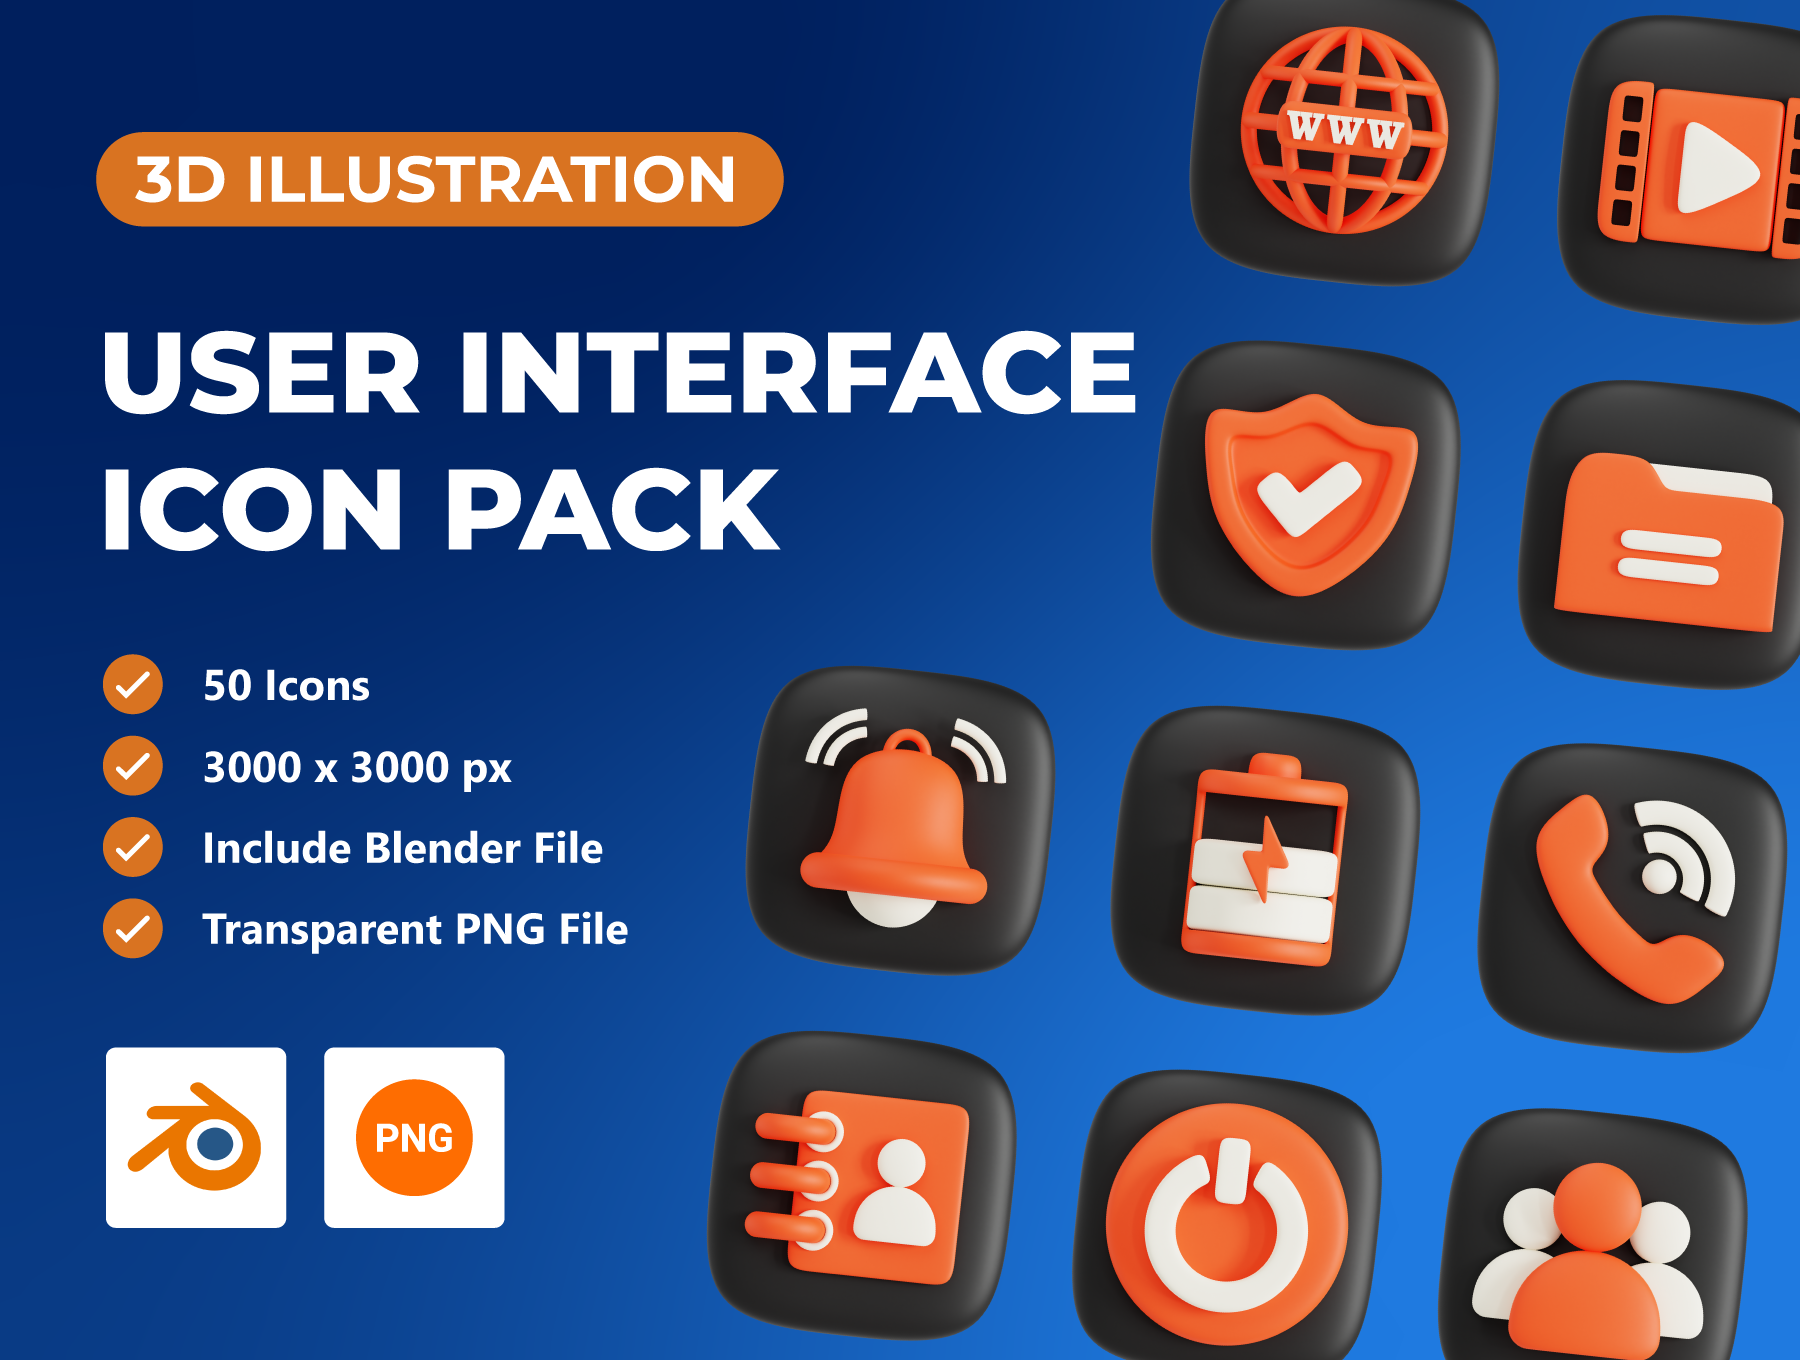 用户界面3D图标包 User Interface 3D Icon Pack blender格式-3D/图标-到位啦UI